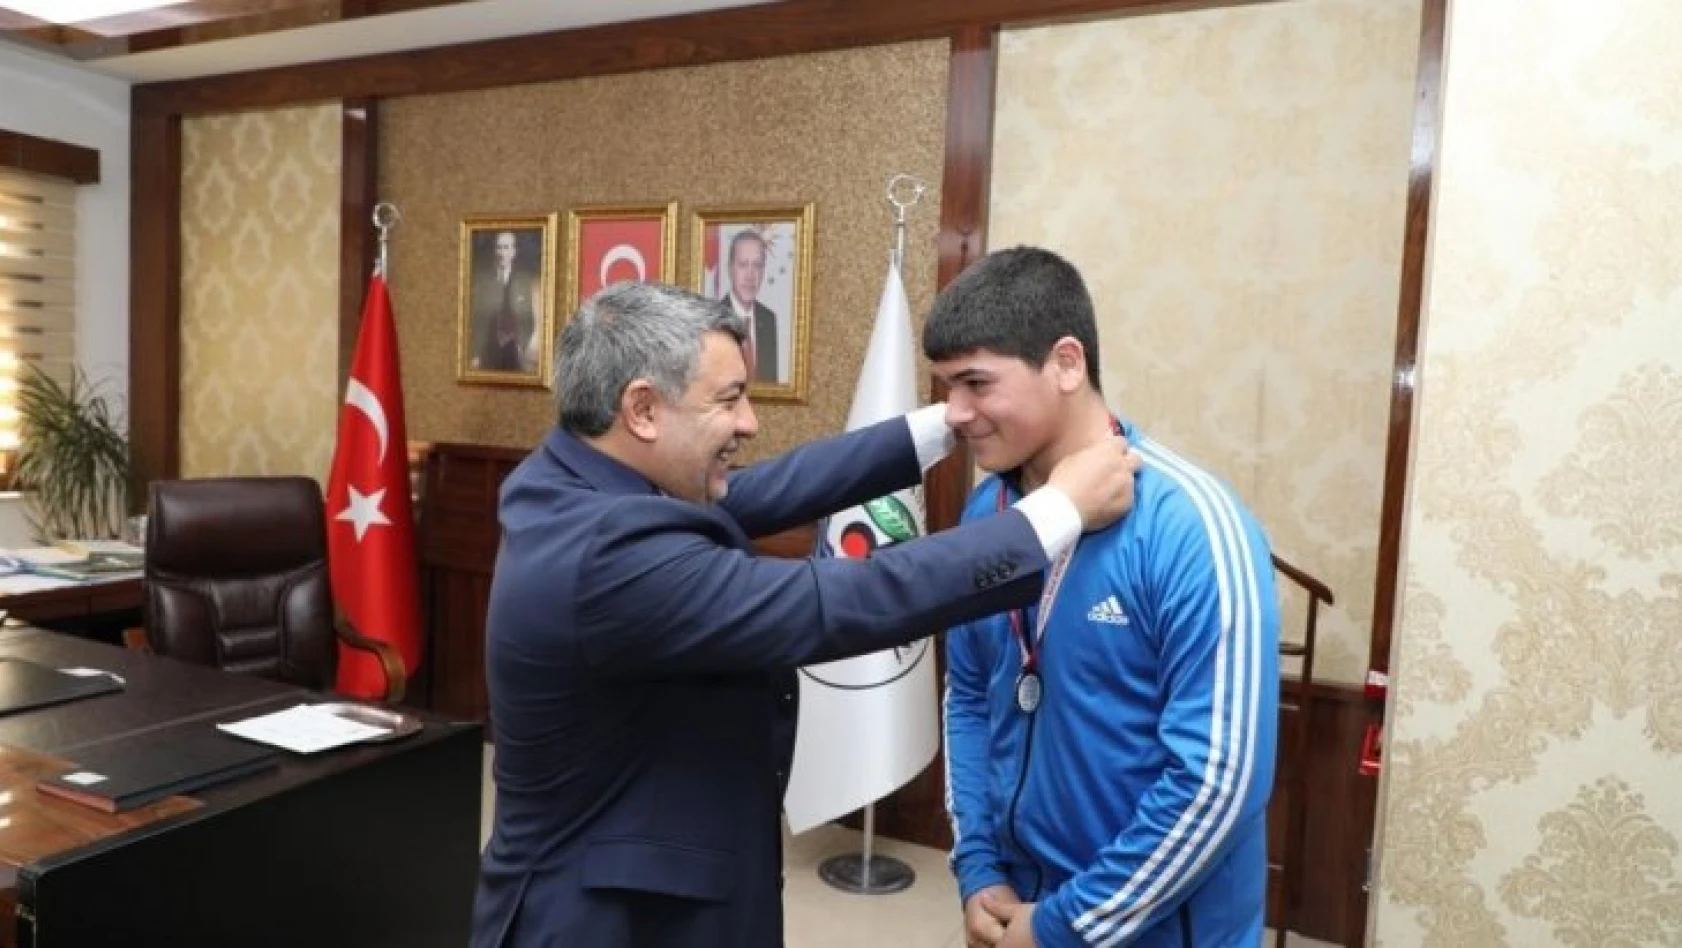 Başkan Şayir, şampiyon sporcuyu ağırladı